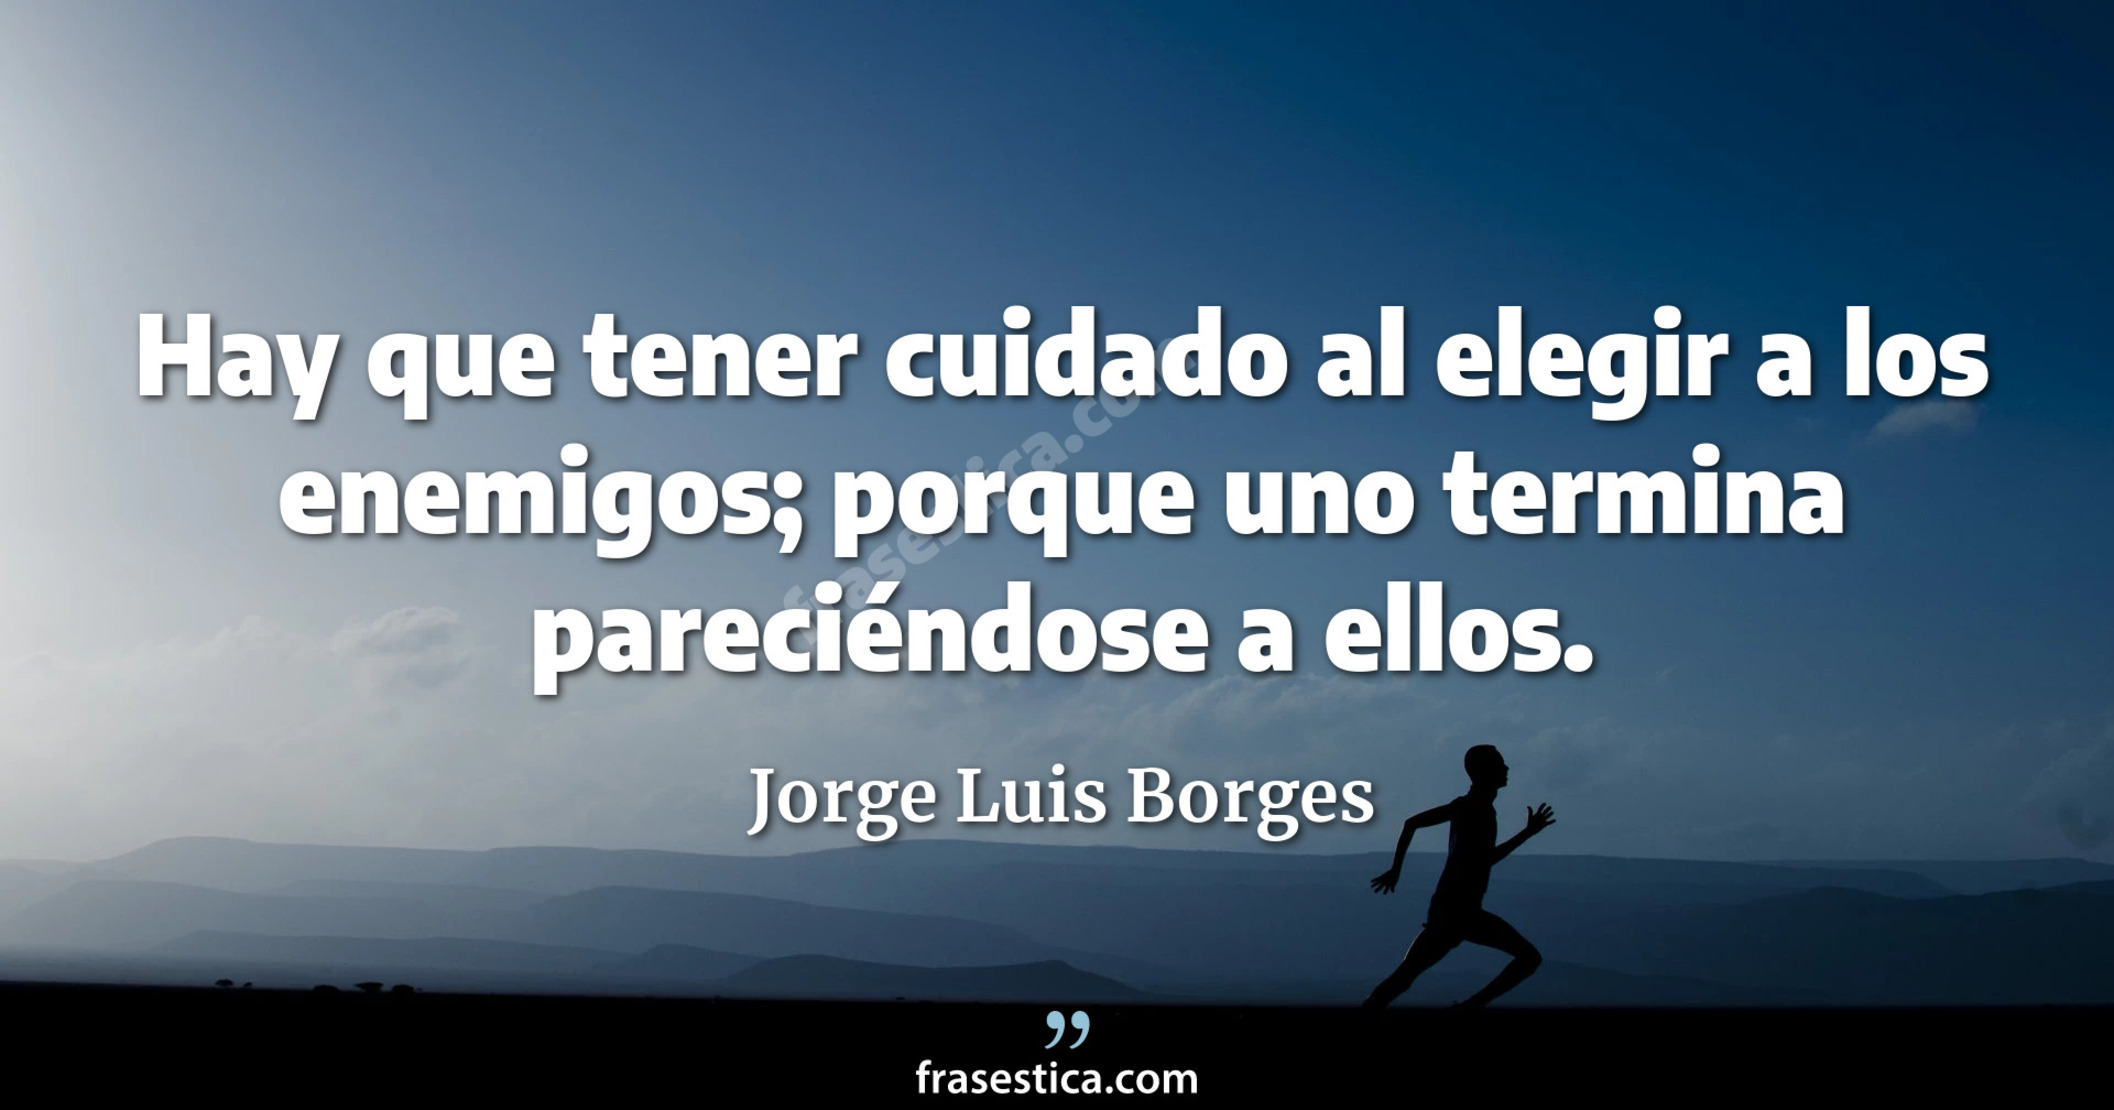 Hay que tener cuidado al elegir a los enemigos; porque uno termina pareciéndose a ellos. - Jorge Luis Borges